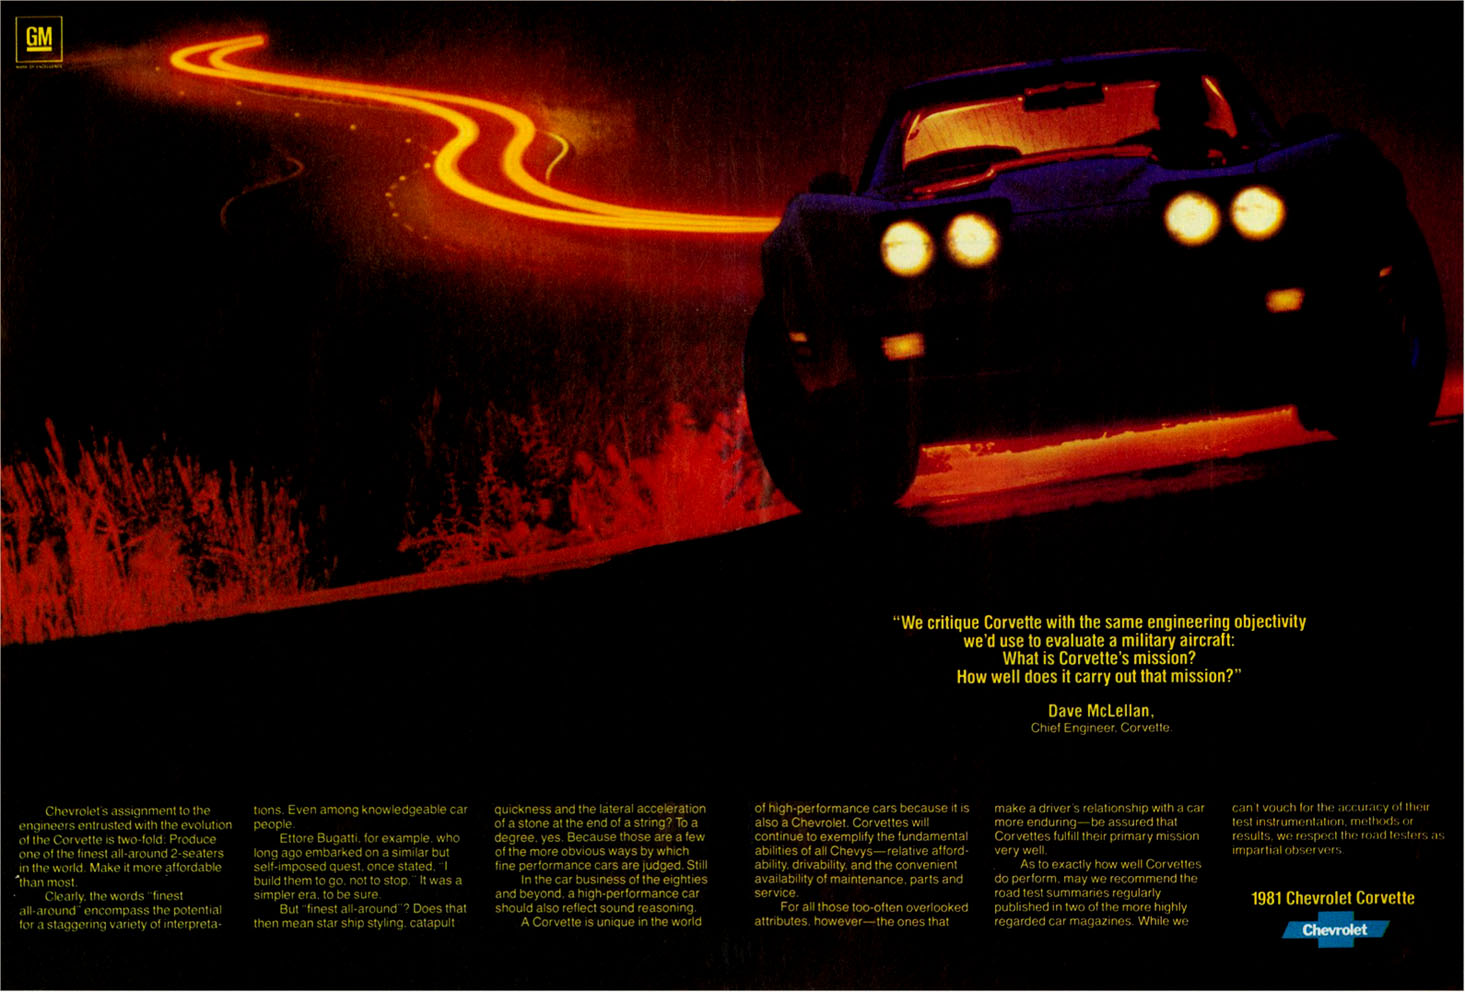 1981 Chevrolet Corvette Advertising